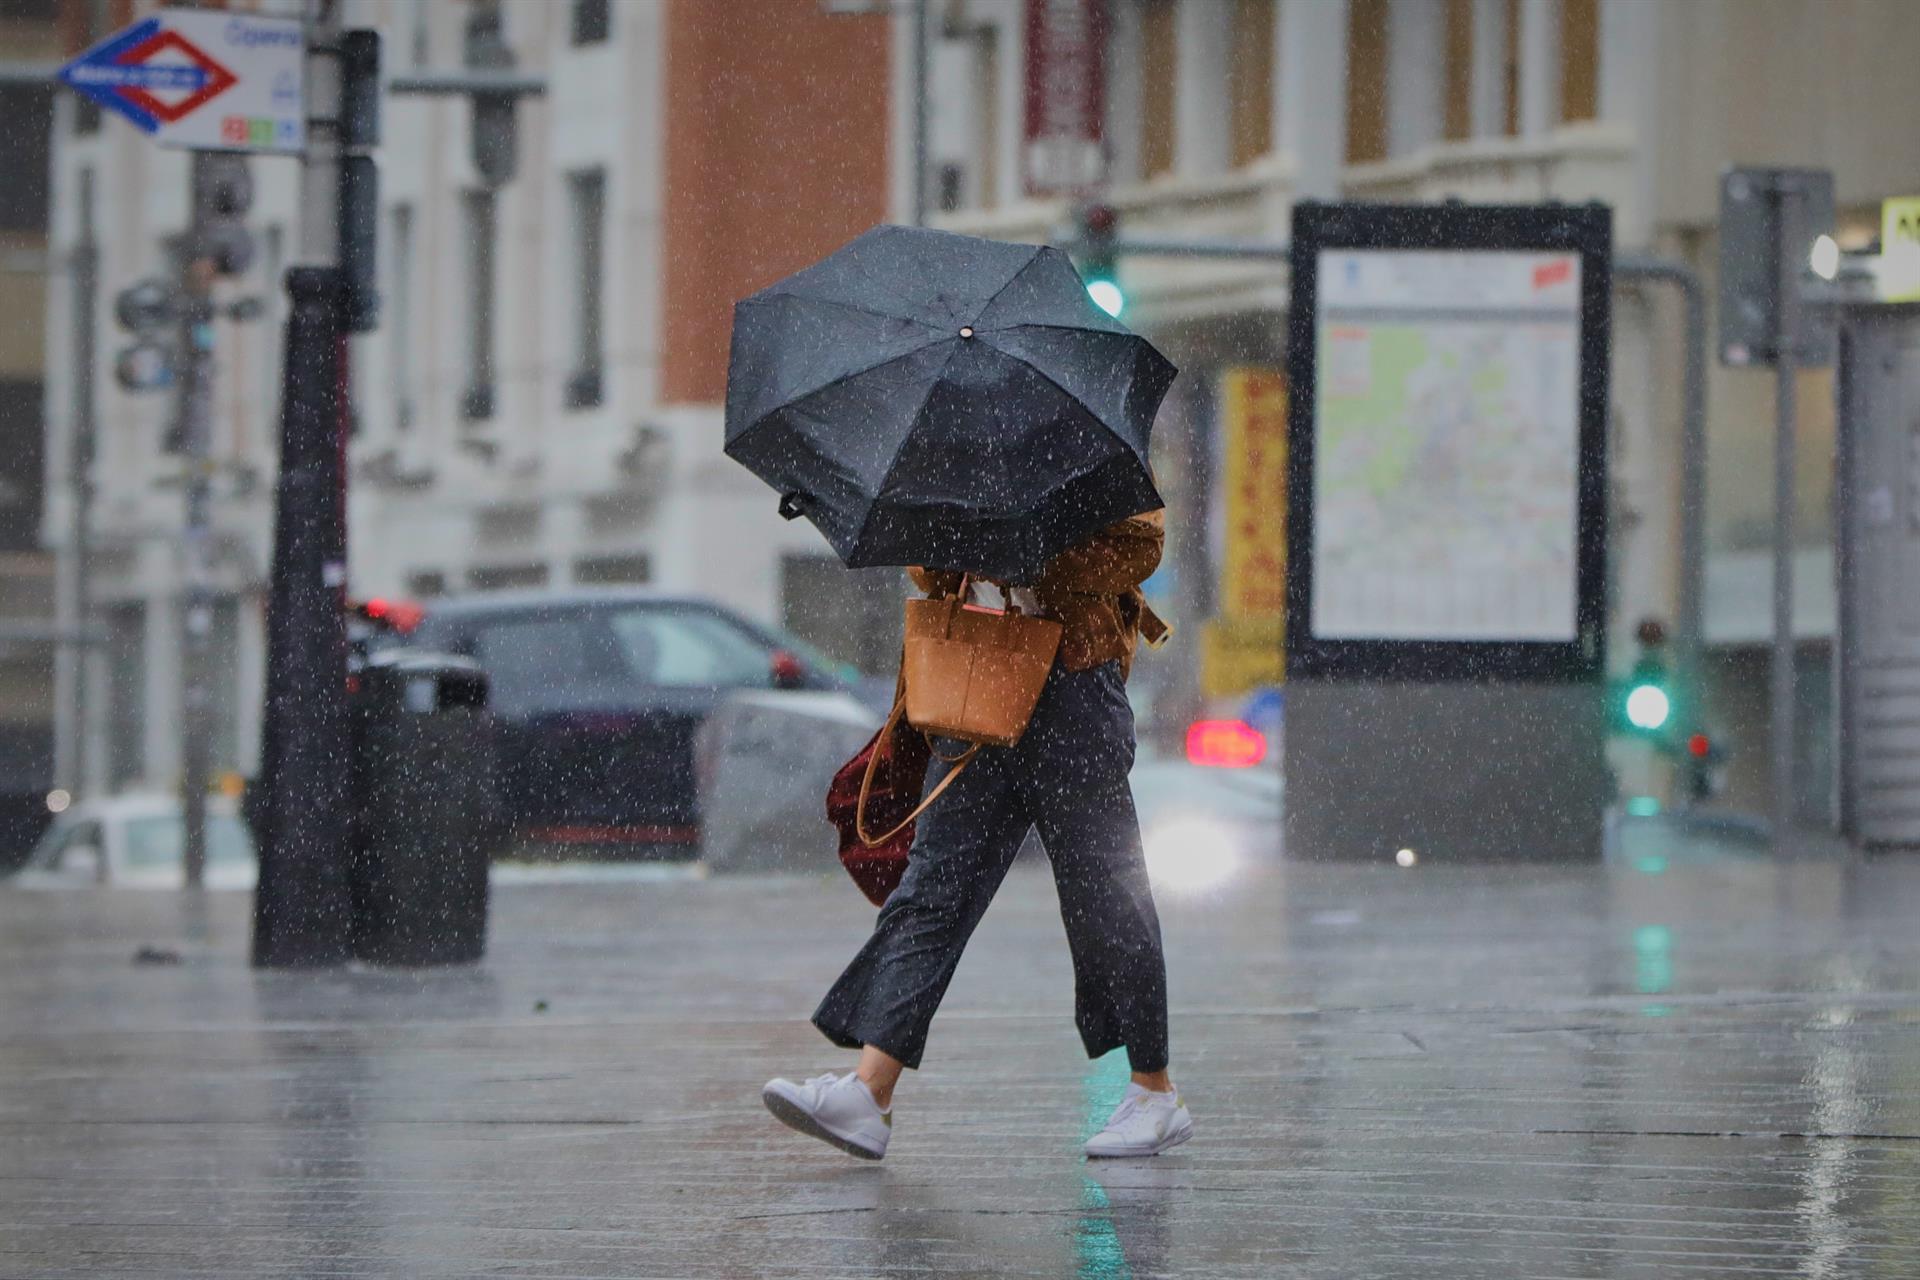 Una persona camina por el centro de la capital en una jornada marcada por las lluvias y la bajada de temperaturas, en Madrid, (España). - Jesús Hellín - Europa Press - Archivo